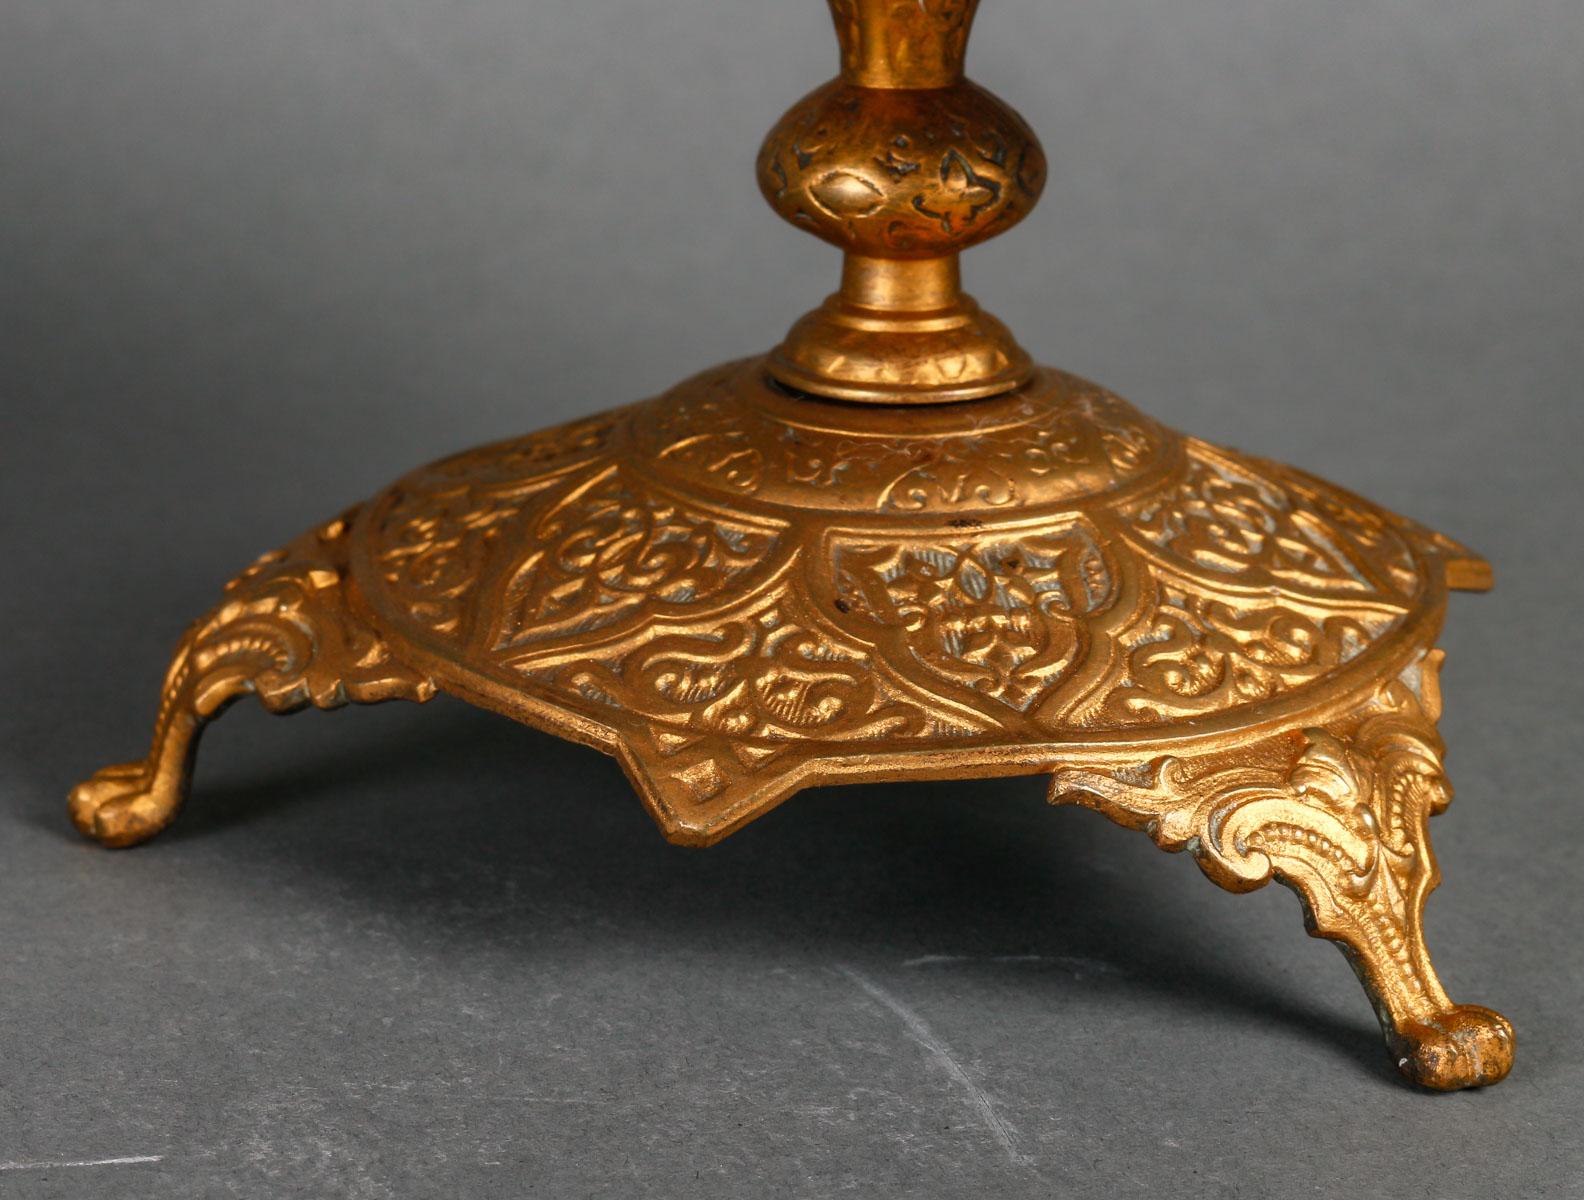 Muschelskulptur, Porzellanfigur und vergoldeter Bronzesockel, 20. Jahrhundert.
h: 32,5cm, B: 18cm, T: 17cm